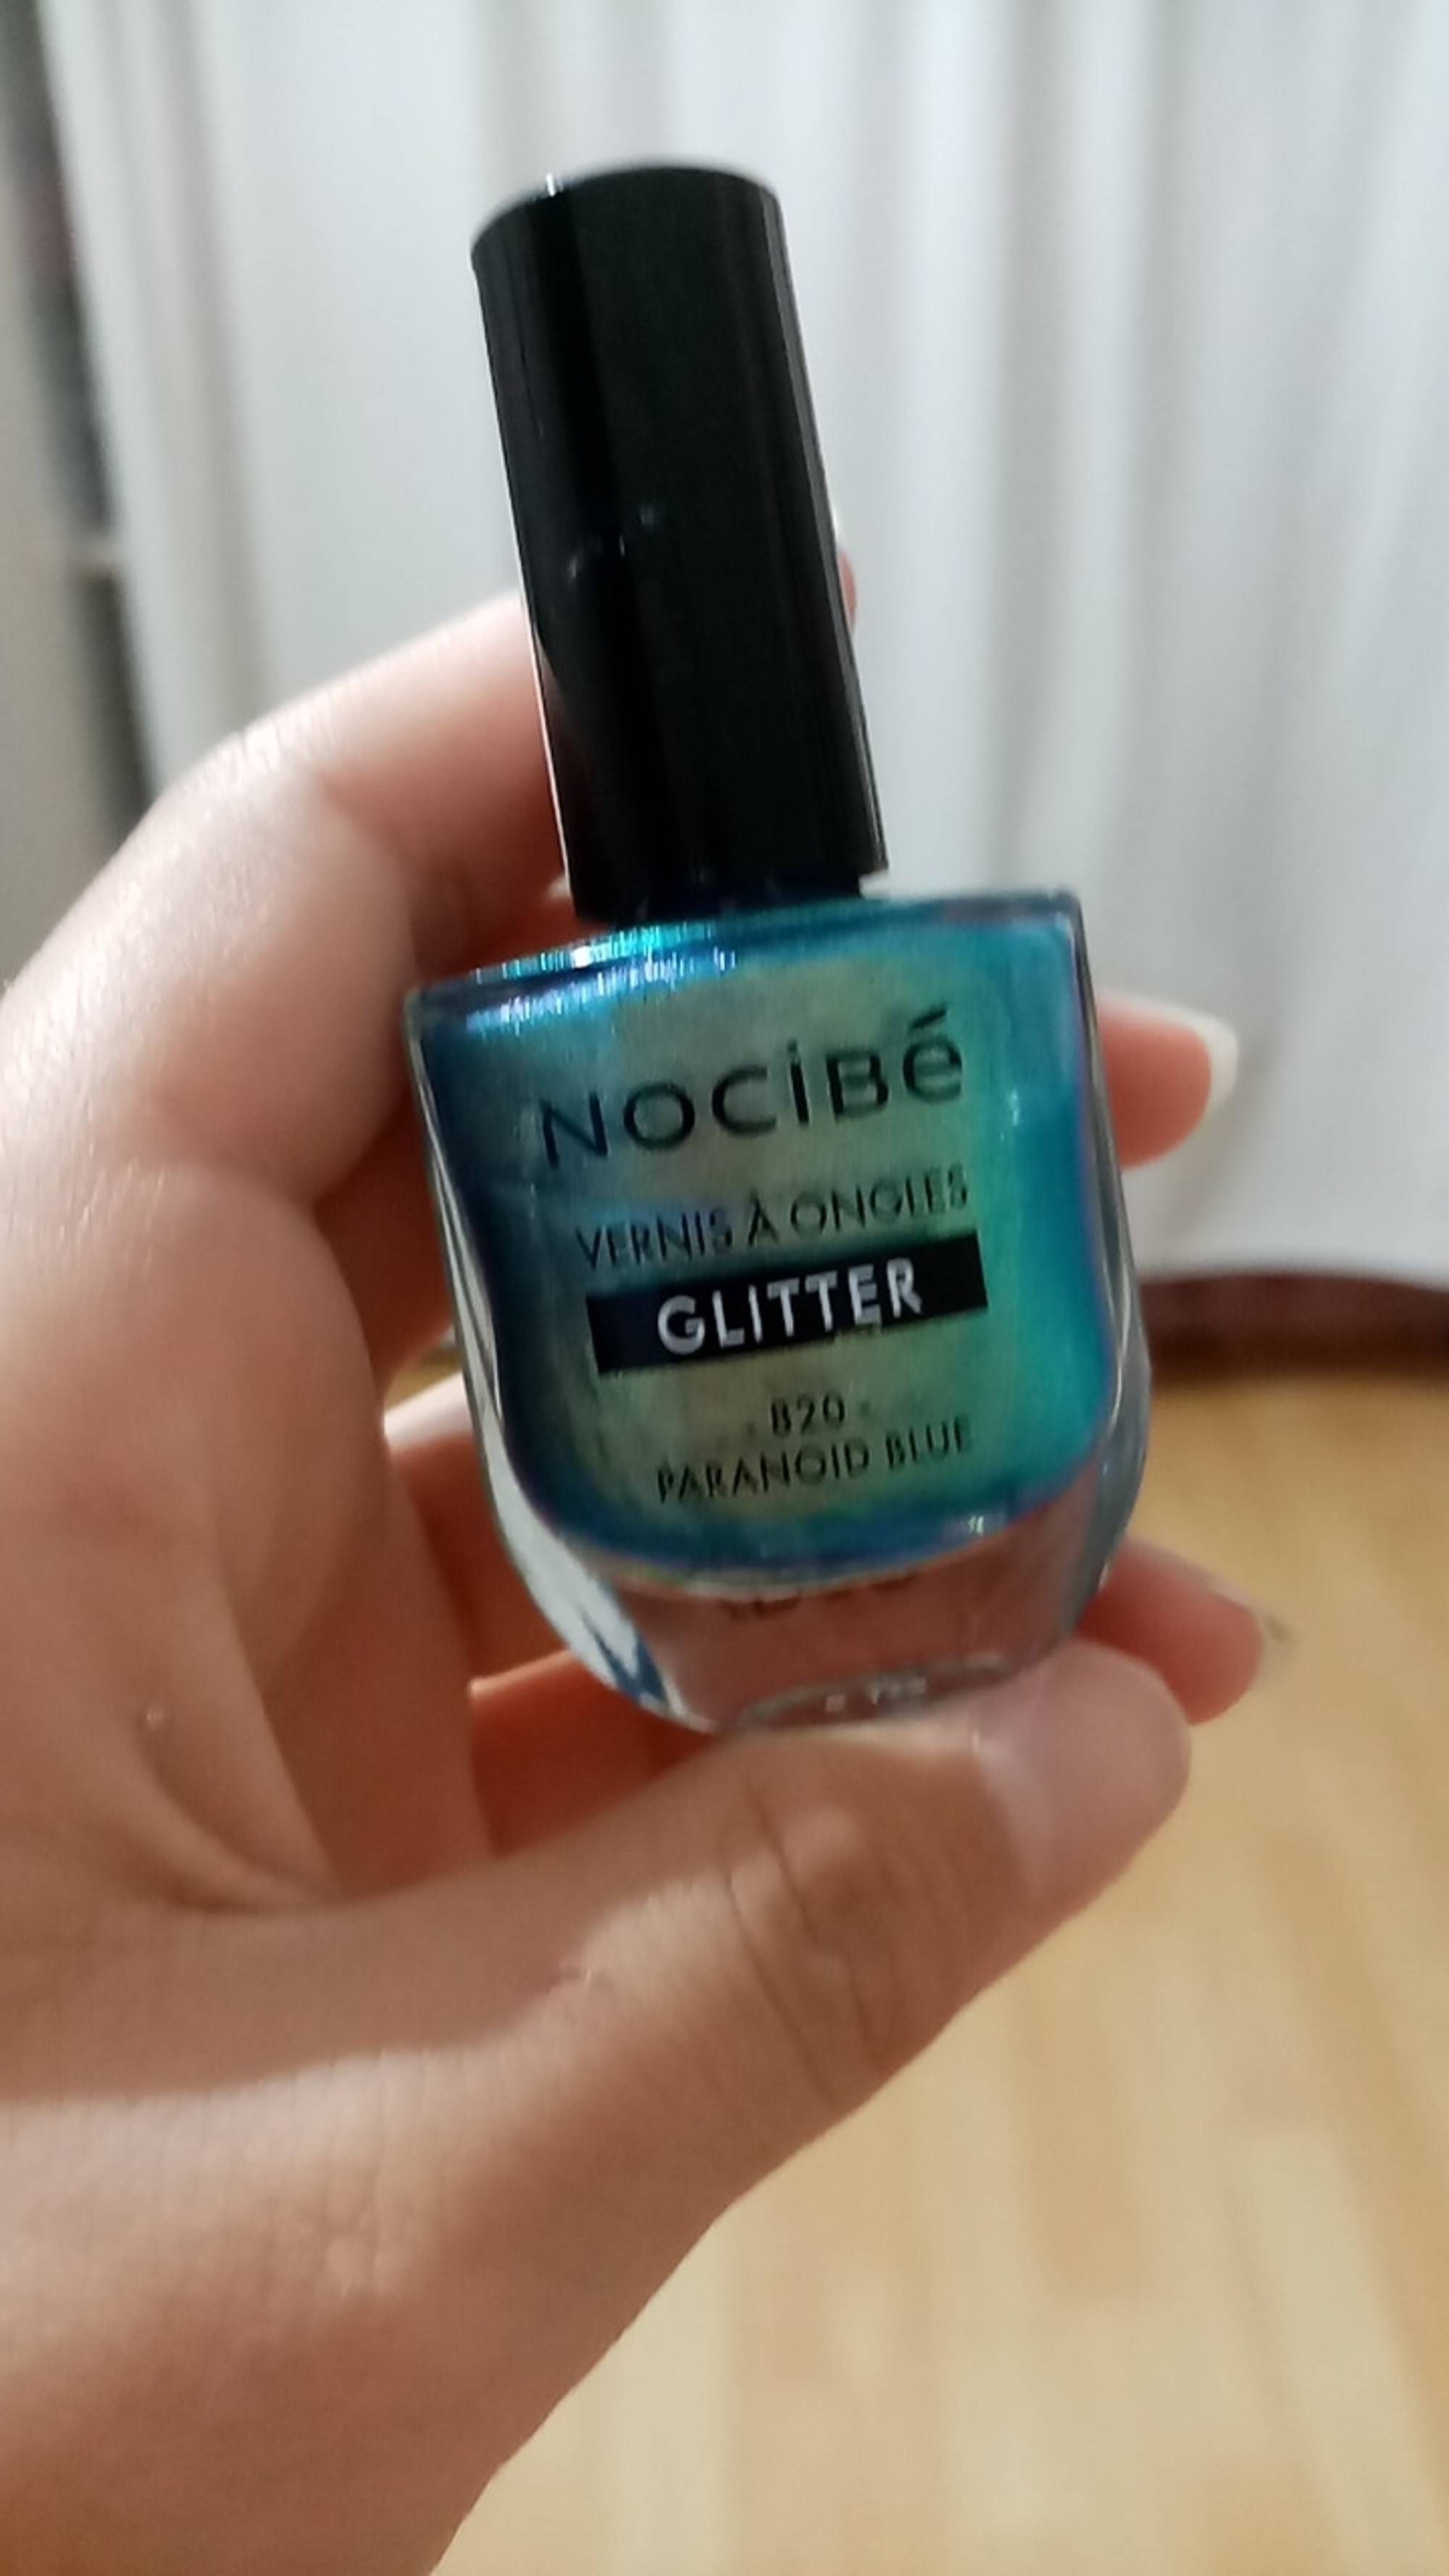 NOCIBÉ - Glitter - Vernis à ongles 820 paranoid blue